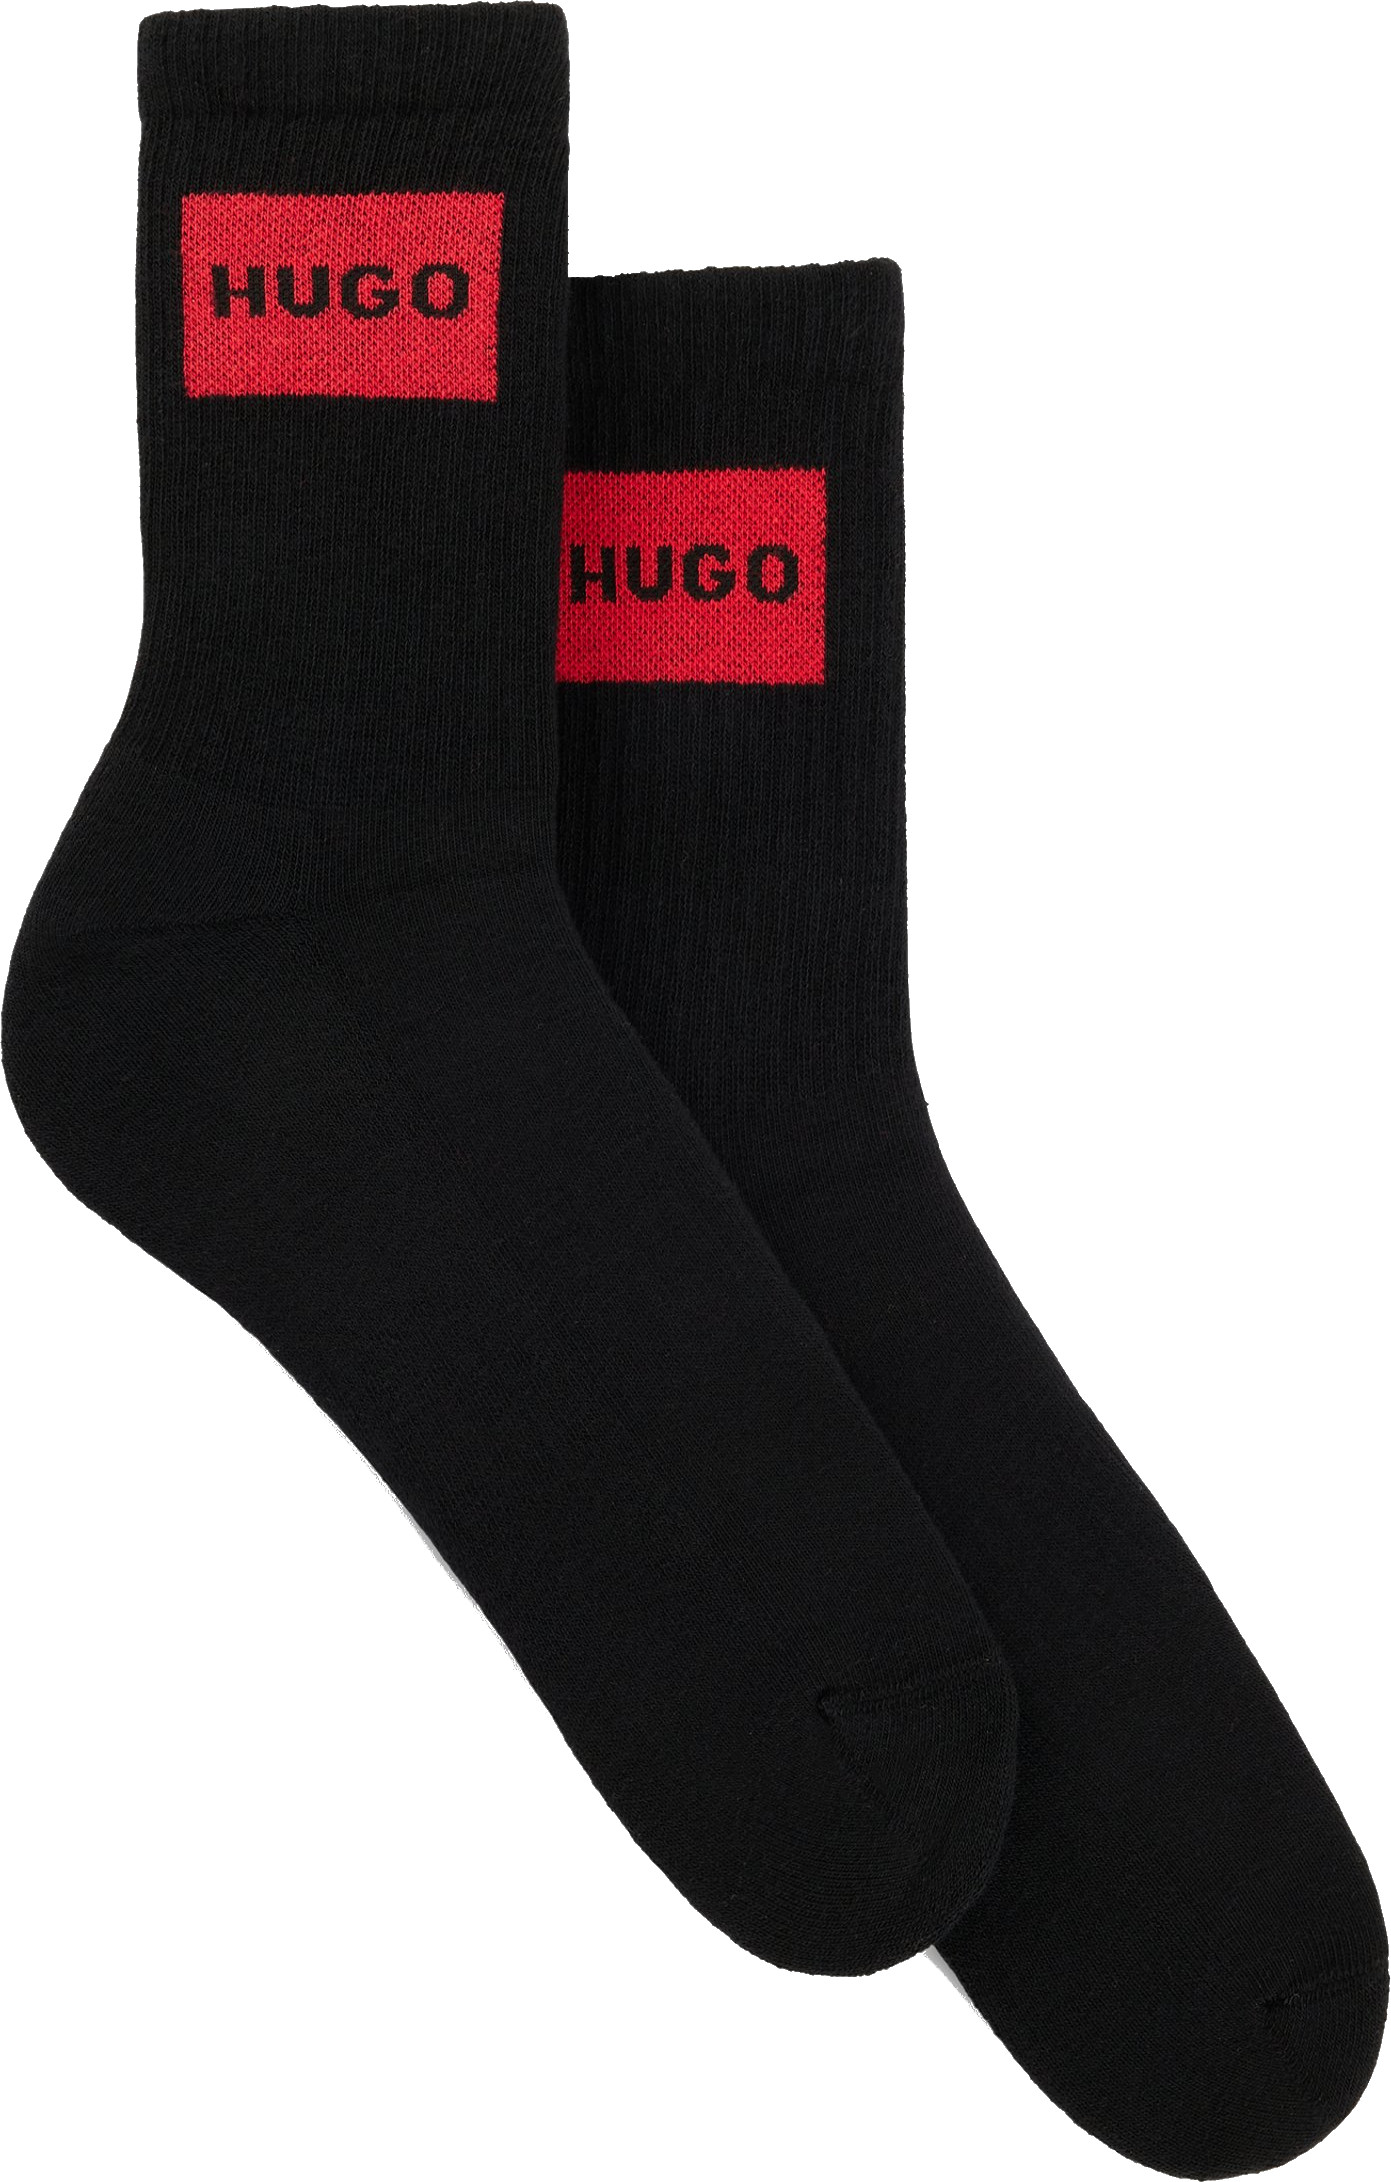 Hugo Boss 2 PACK - dámske ponožky HUGO 50510661-001 39-42